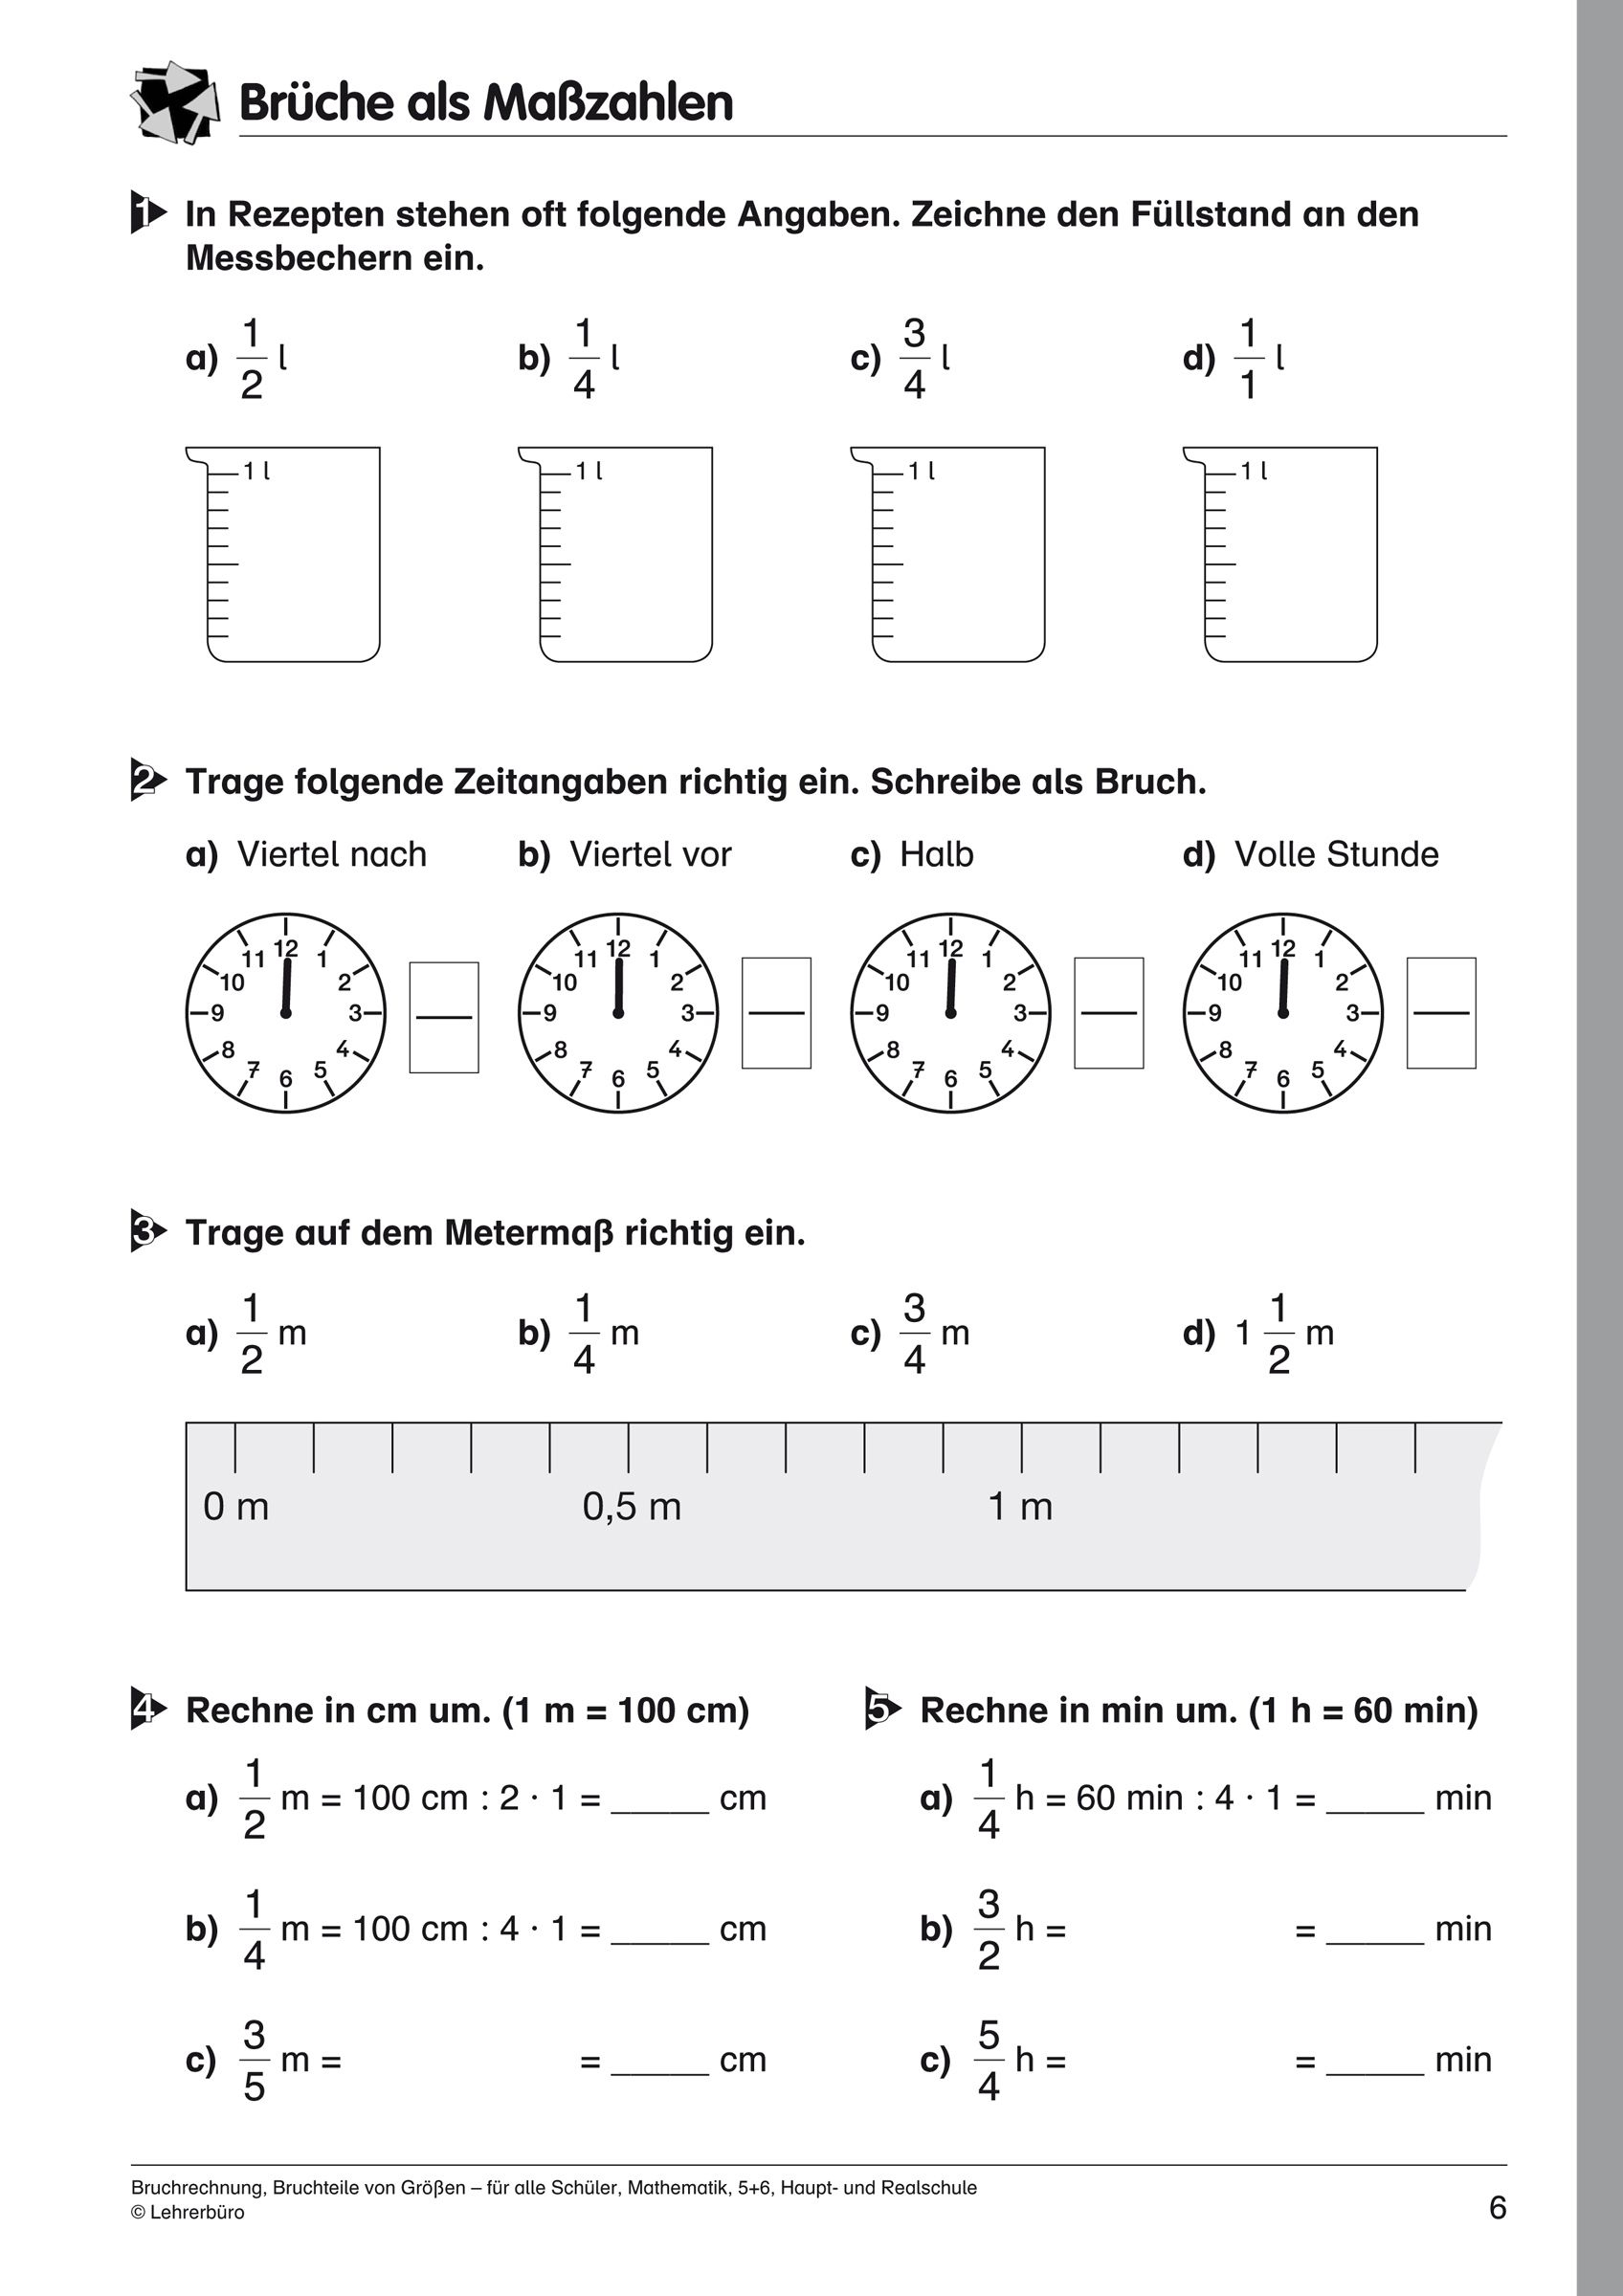 27 Mathe Arbeitsblätter Klasse 5 Gymnasium Zum Ausdrucken bestimmt für Mathe 6 Klasse Gymnasium Arbeitsblätter